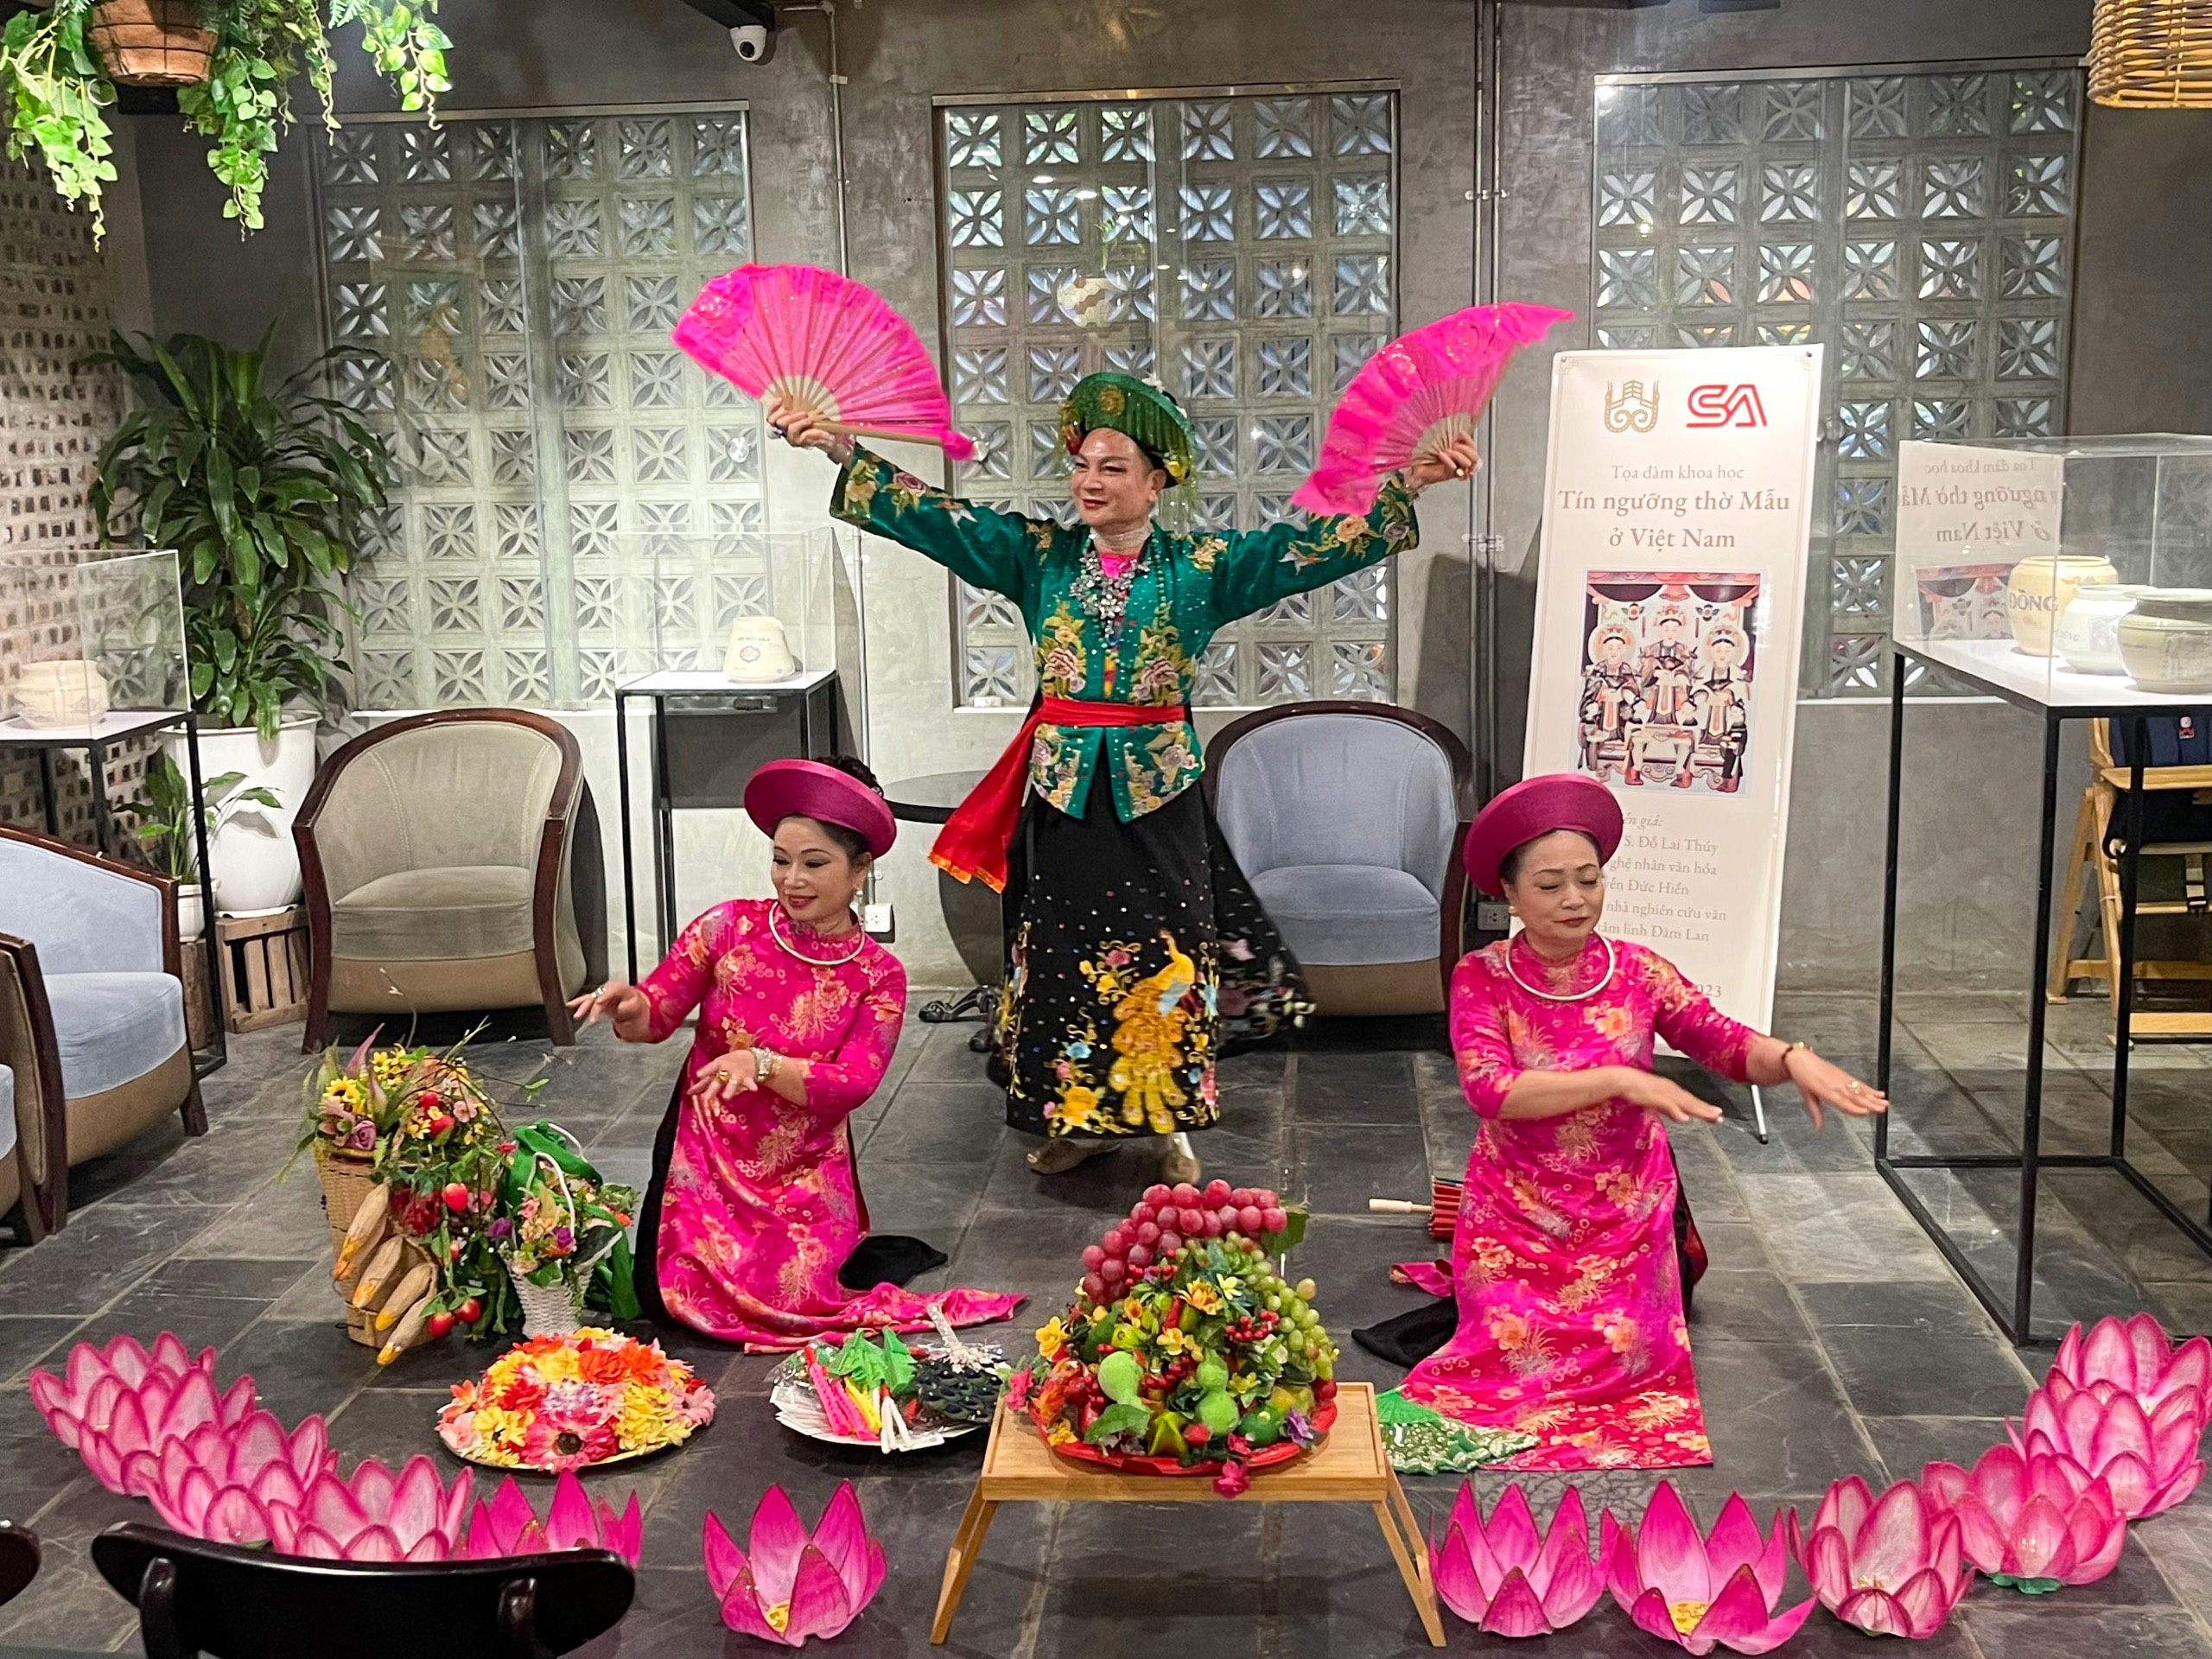 Phát huy giá trị văn hóa truyền thống của Tín ngưỡng thờ Mẫu ở Việt Nam - 3